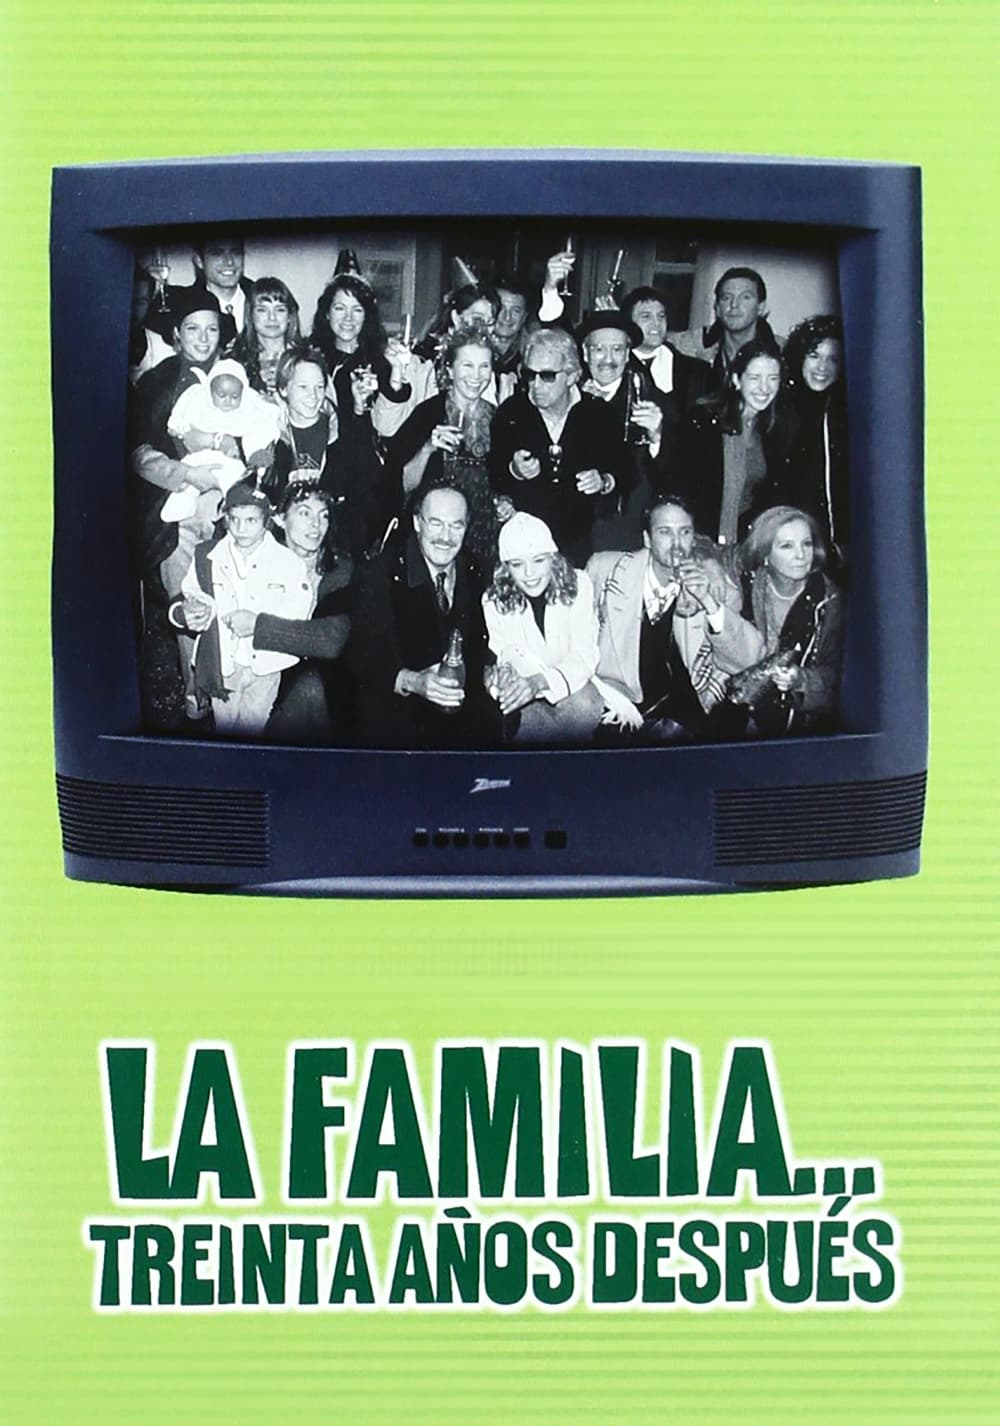 La familia... 30 años después (1999)